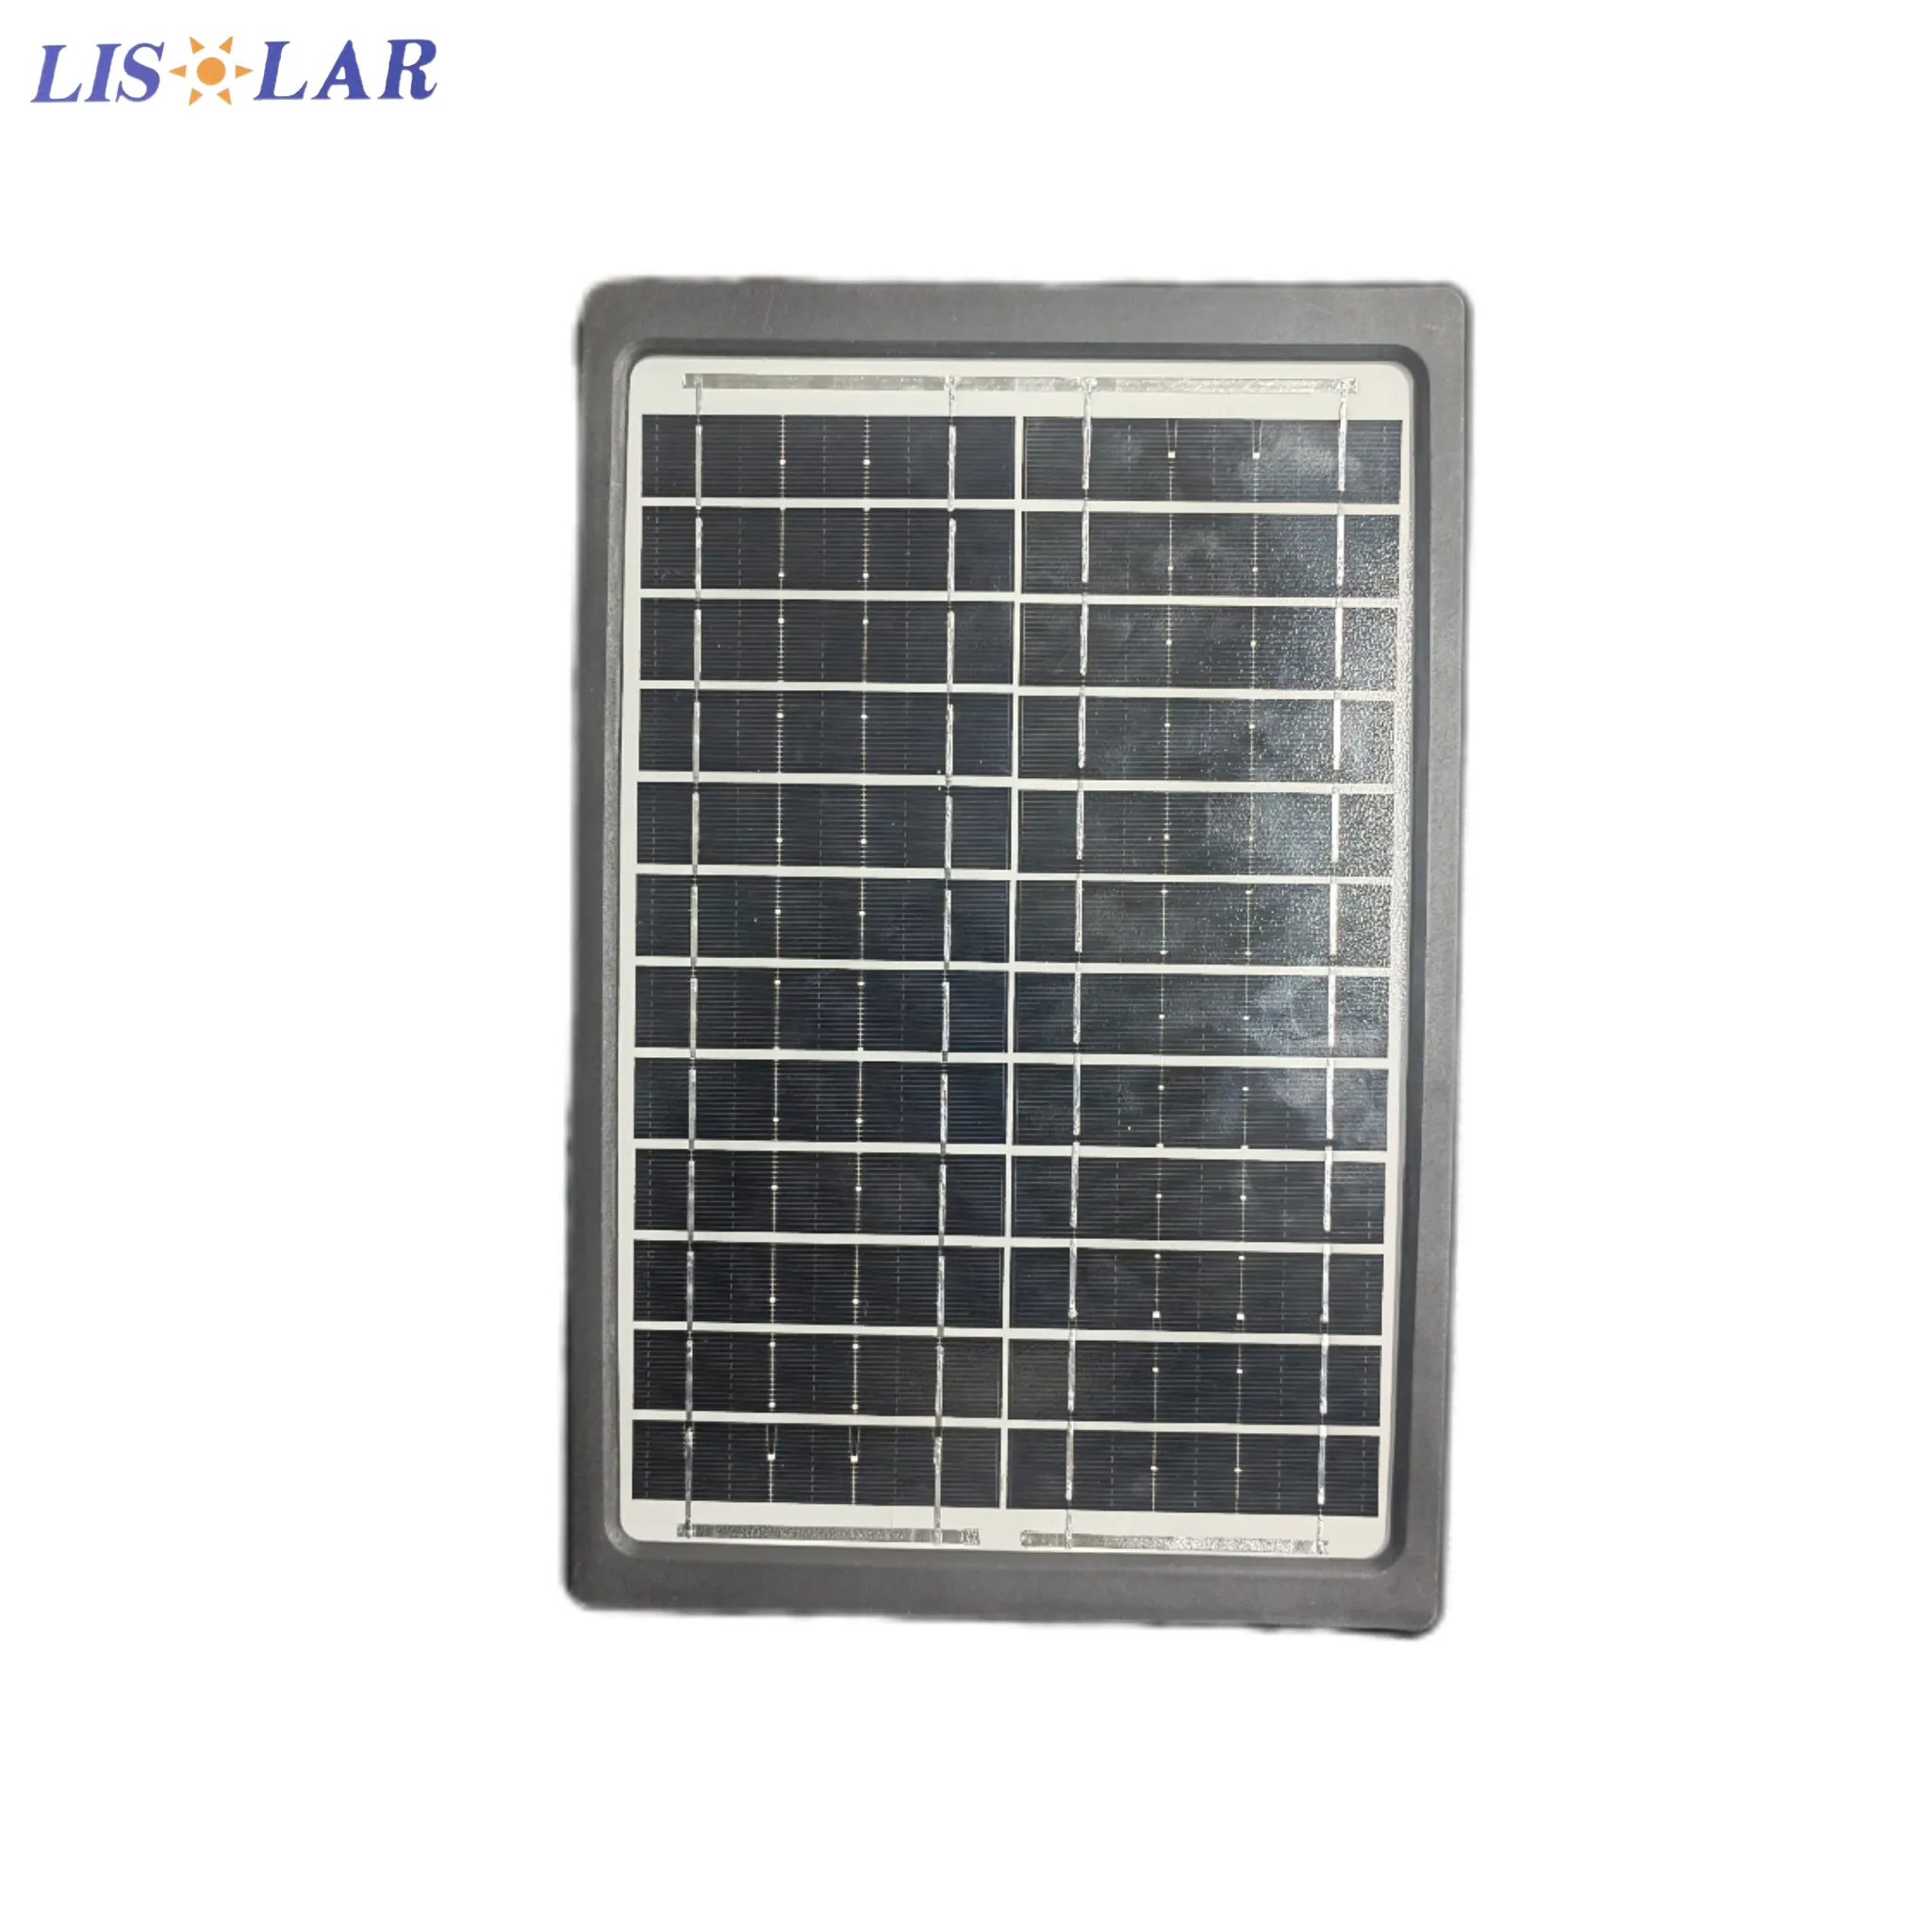 Personnalisation OEM 6/12V/6W Mini panneau solaire, avec béquille IP65 Module poly étanche Panneau solaire pour appareils électroniques